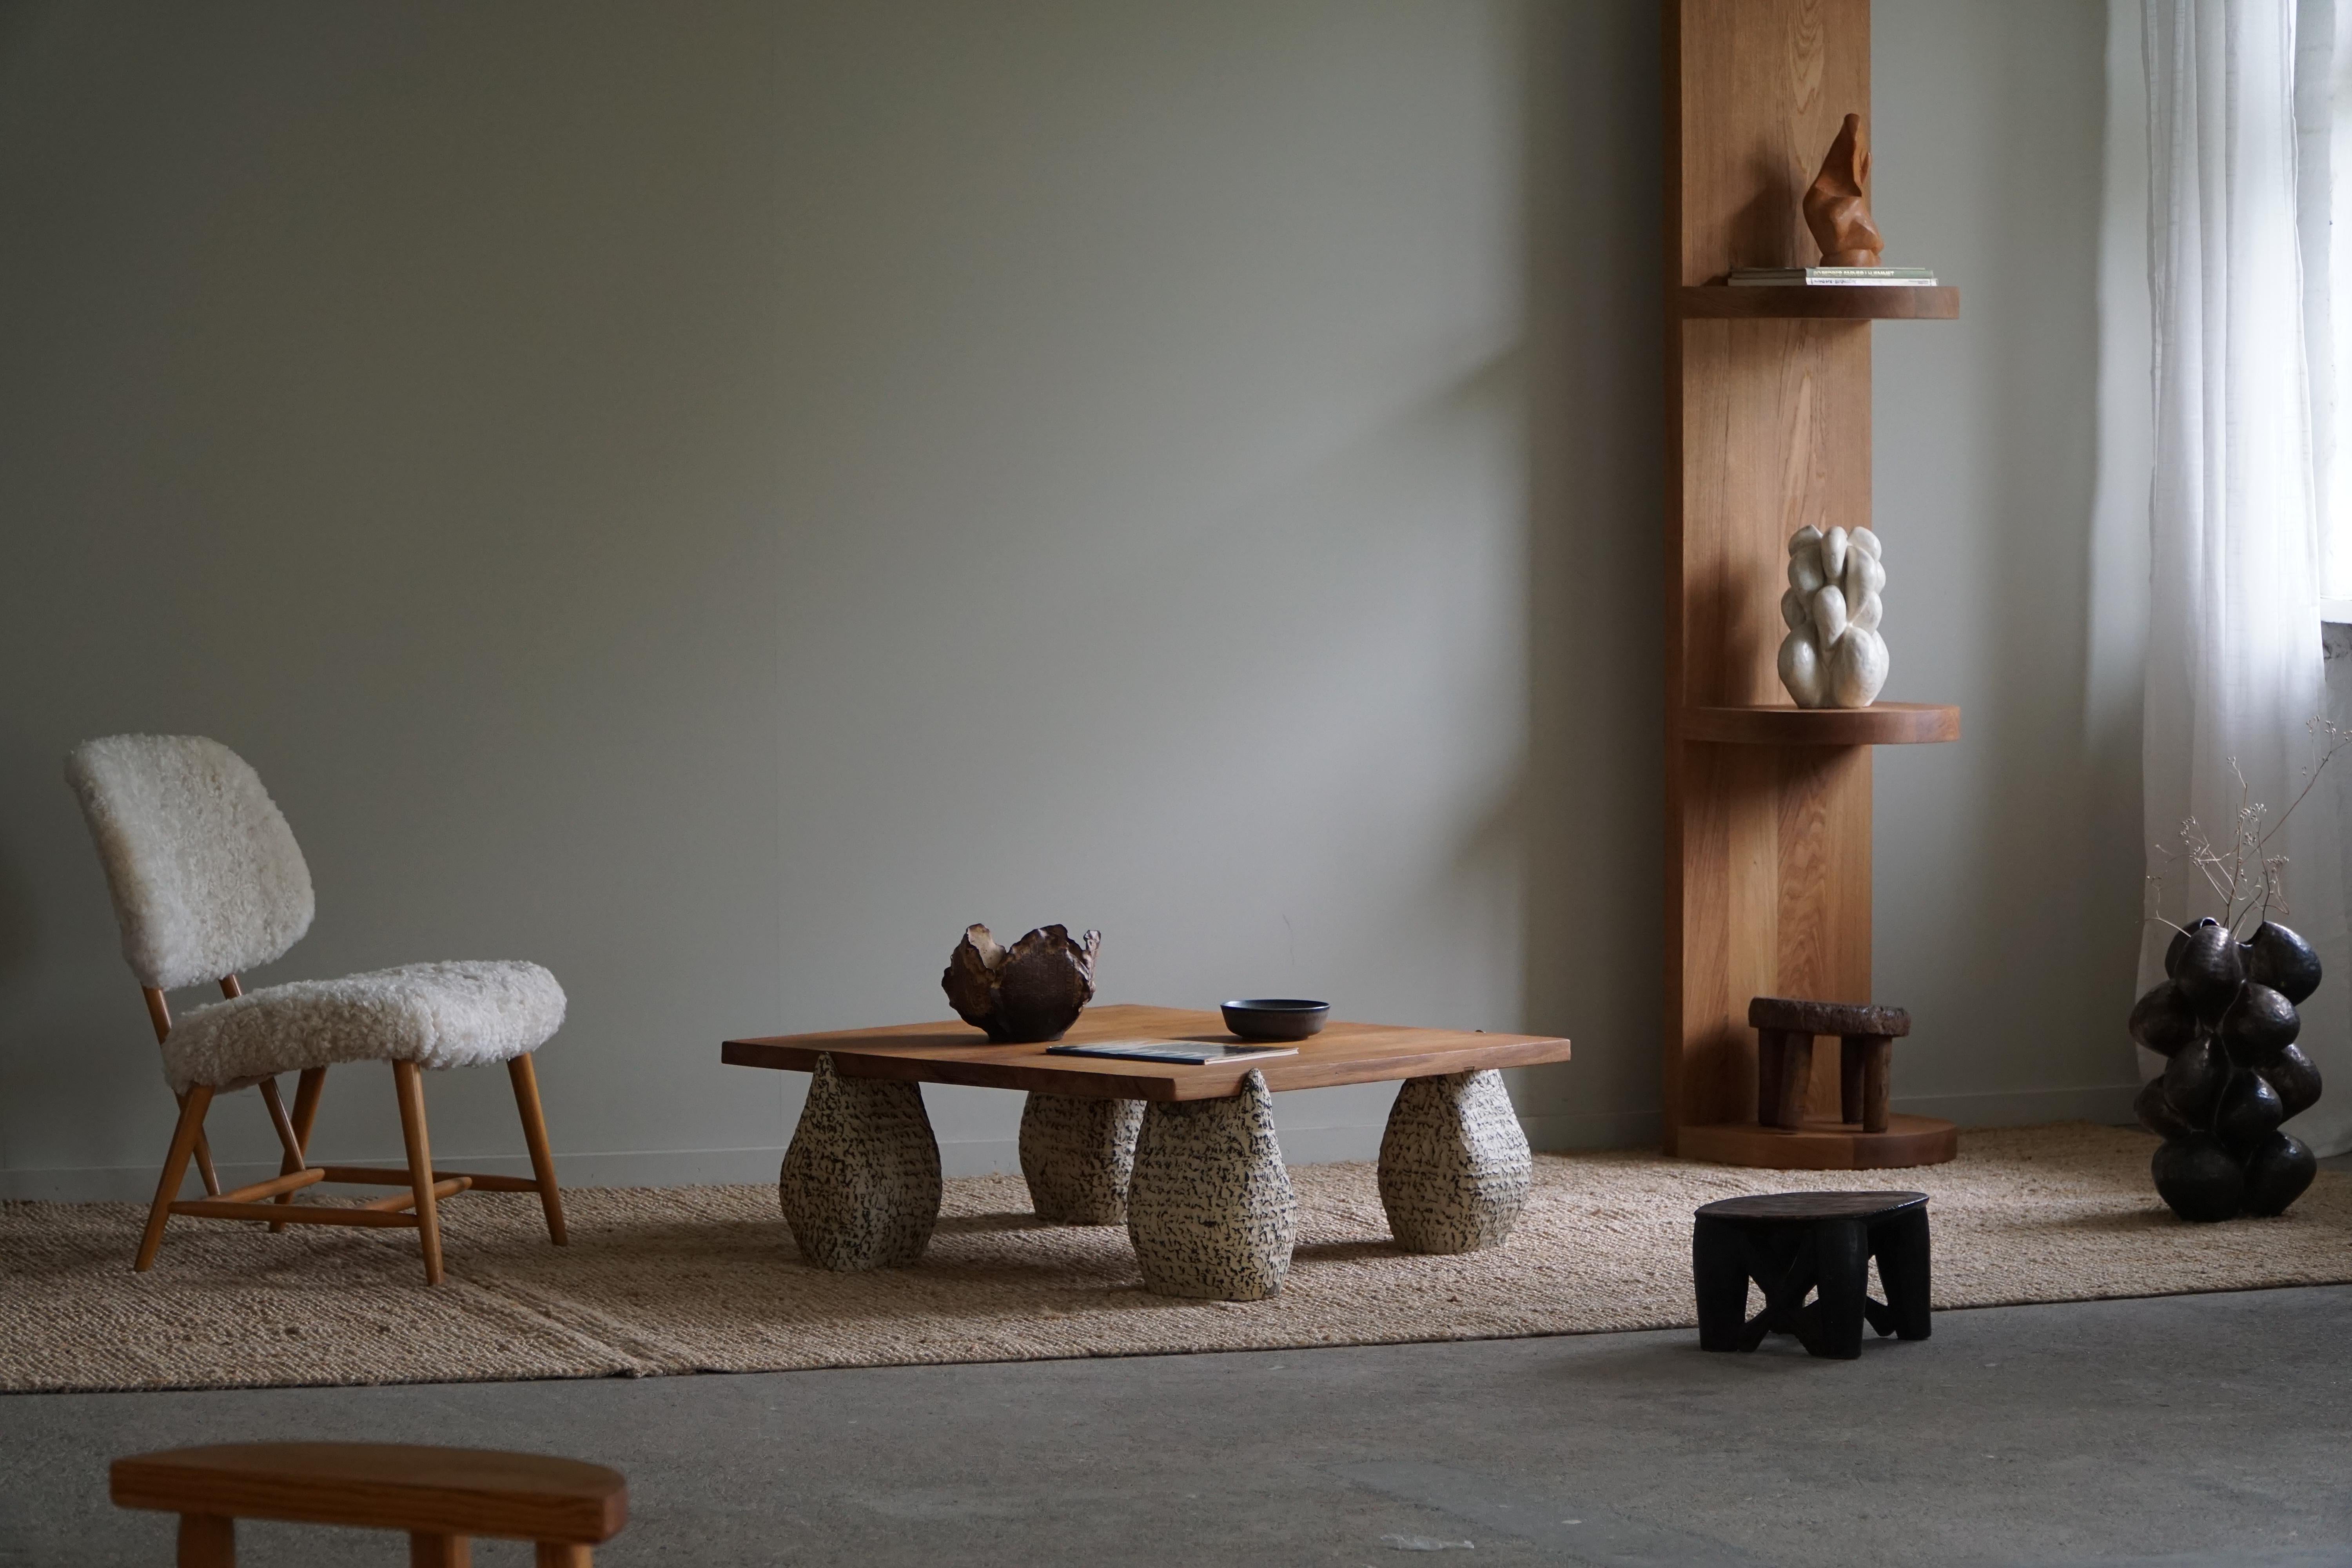 A Square Table ist aus einer Collaboration zwischen eliaselias & Ole Victor entstanden. Die Idee ist, ein funktionelles Möbelstück zu schaffen, aber vor allem ein Kunstwerk. Die Kombination verschiedener Materialien - die Vintage-Tischplatte